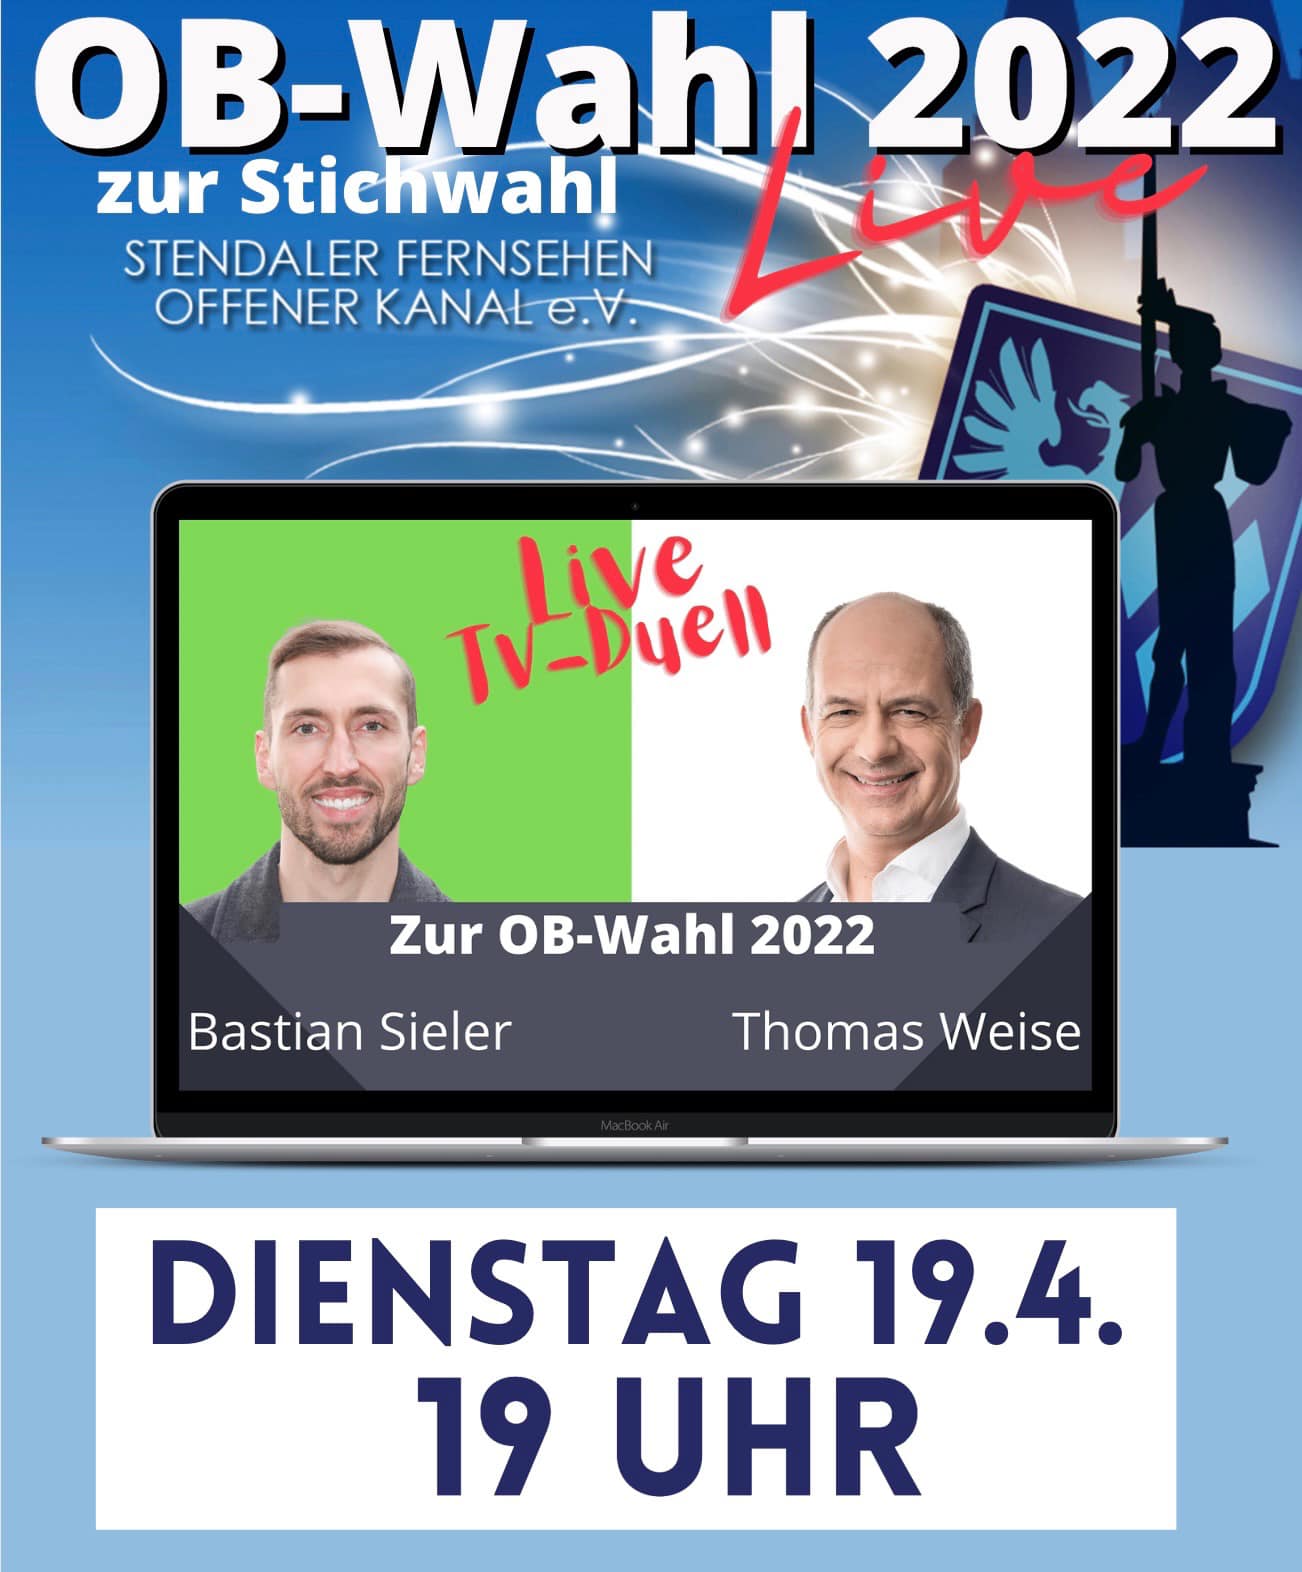 Live OB-Wahl 2022